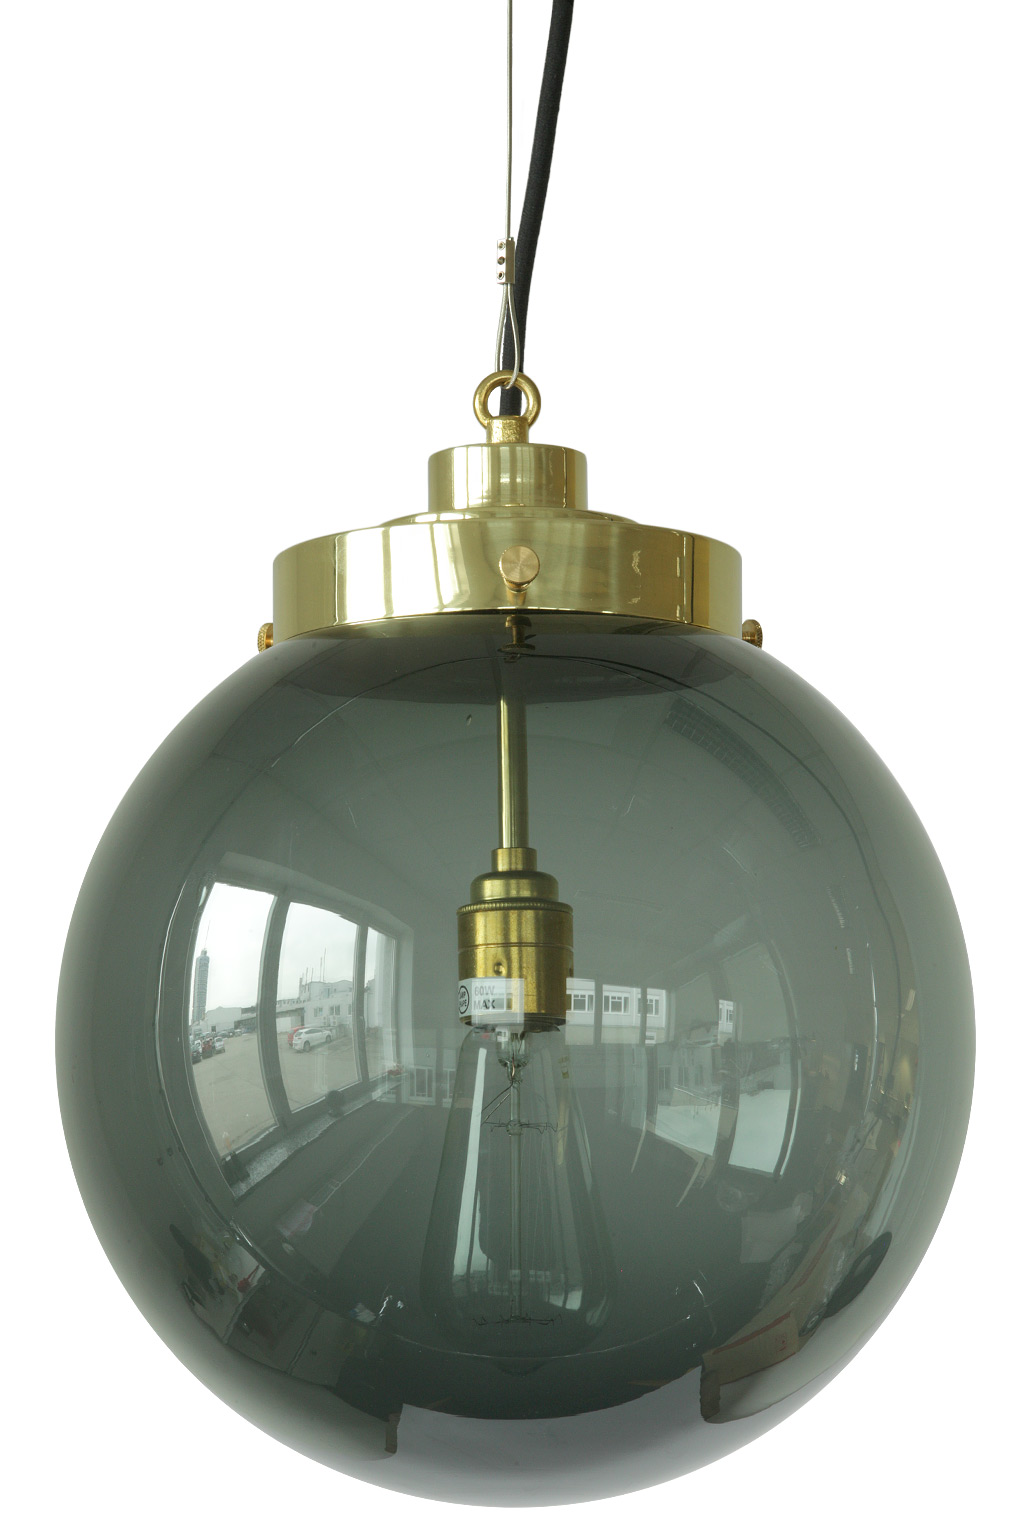 Kugel-Hängeleuchten mit Rauchglas in drei Größen: Schwarzglas-Kugellampe von BTC, mittleres Modell Ø 30 cm, FP541, Messing poliert